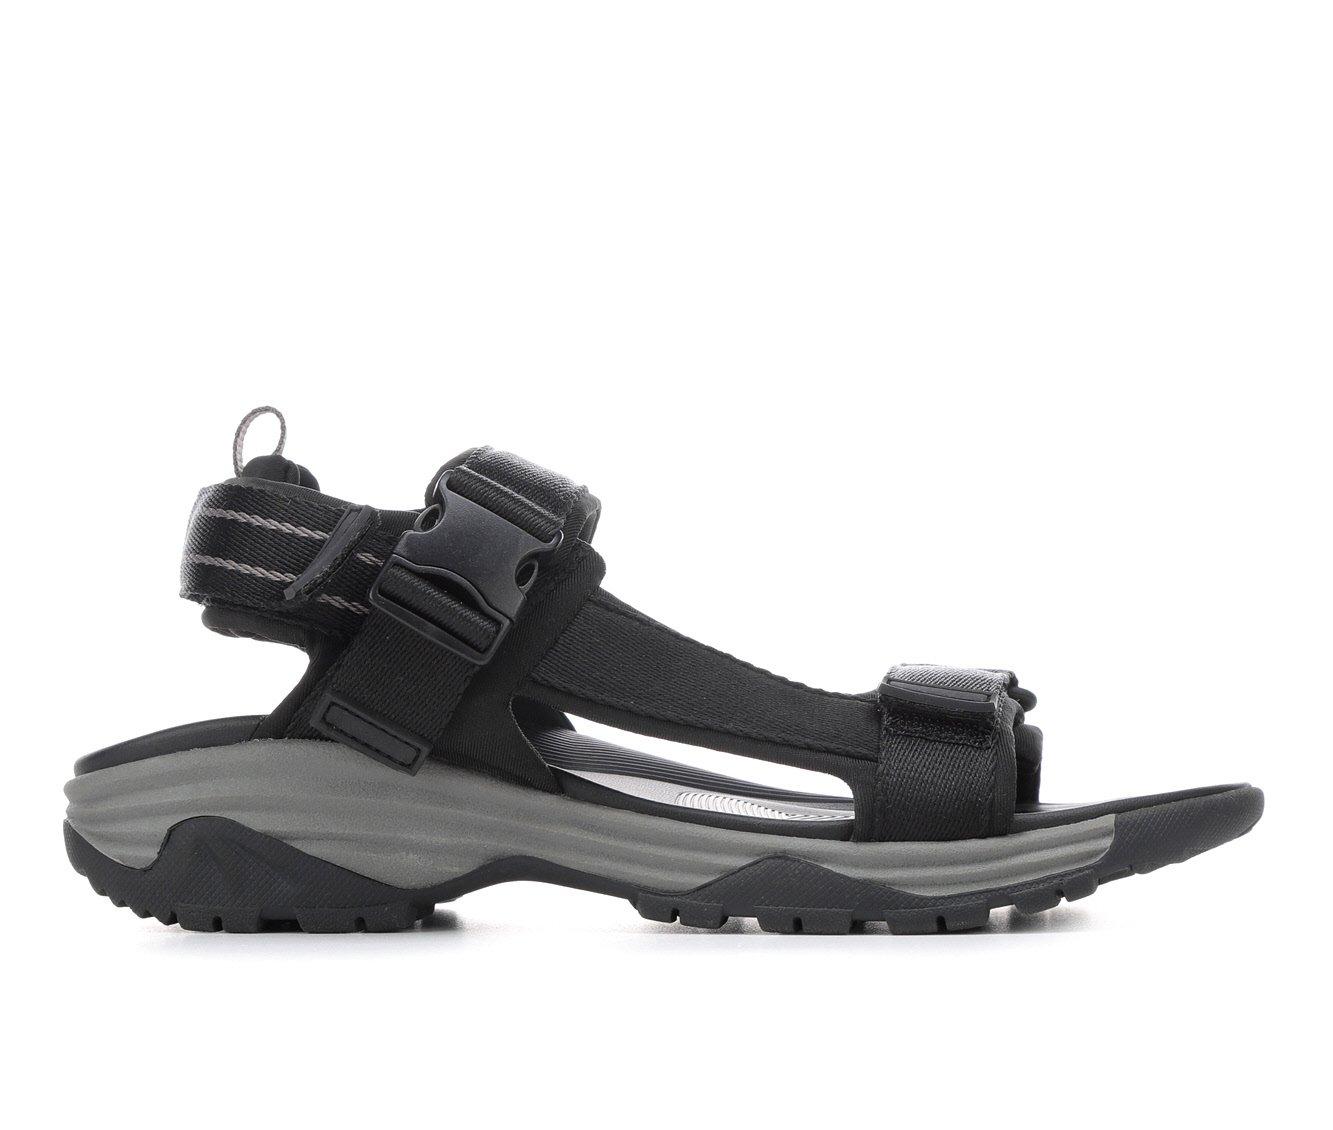 Men's Dockers Bradley Outdoor Sandals